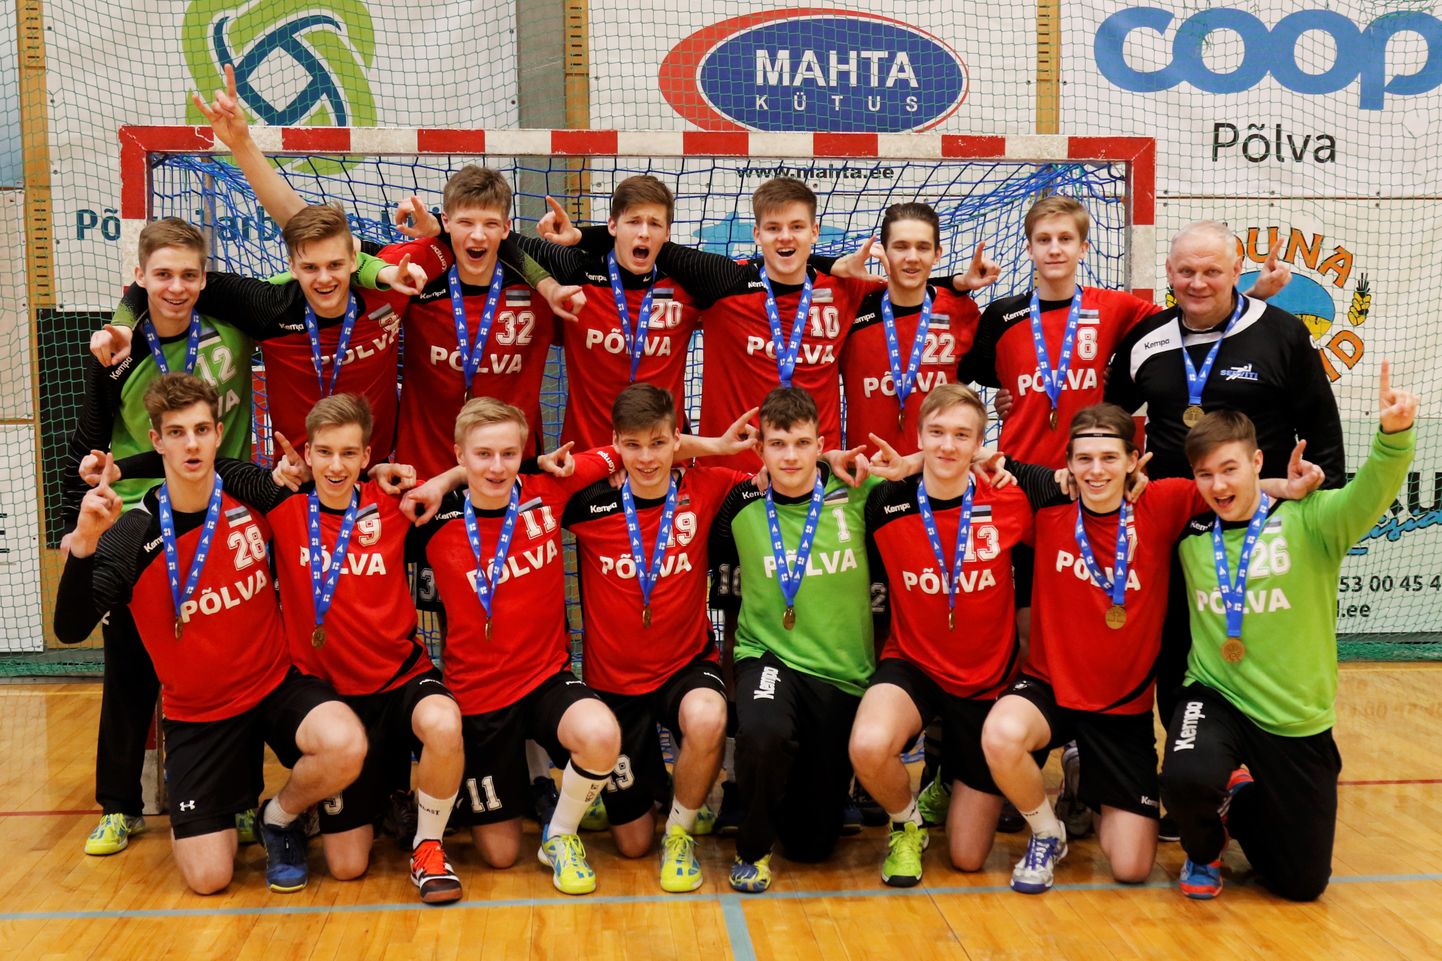 Eesti meister käsipalli A-klassis on Põlva spordikool koos treener Kalmer Mustinguga.